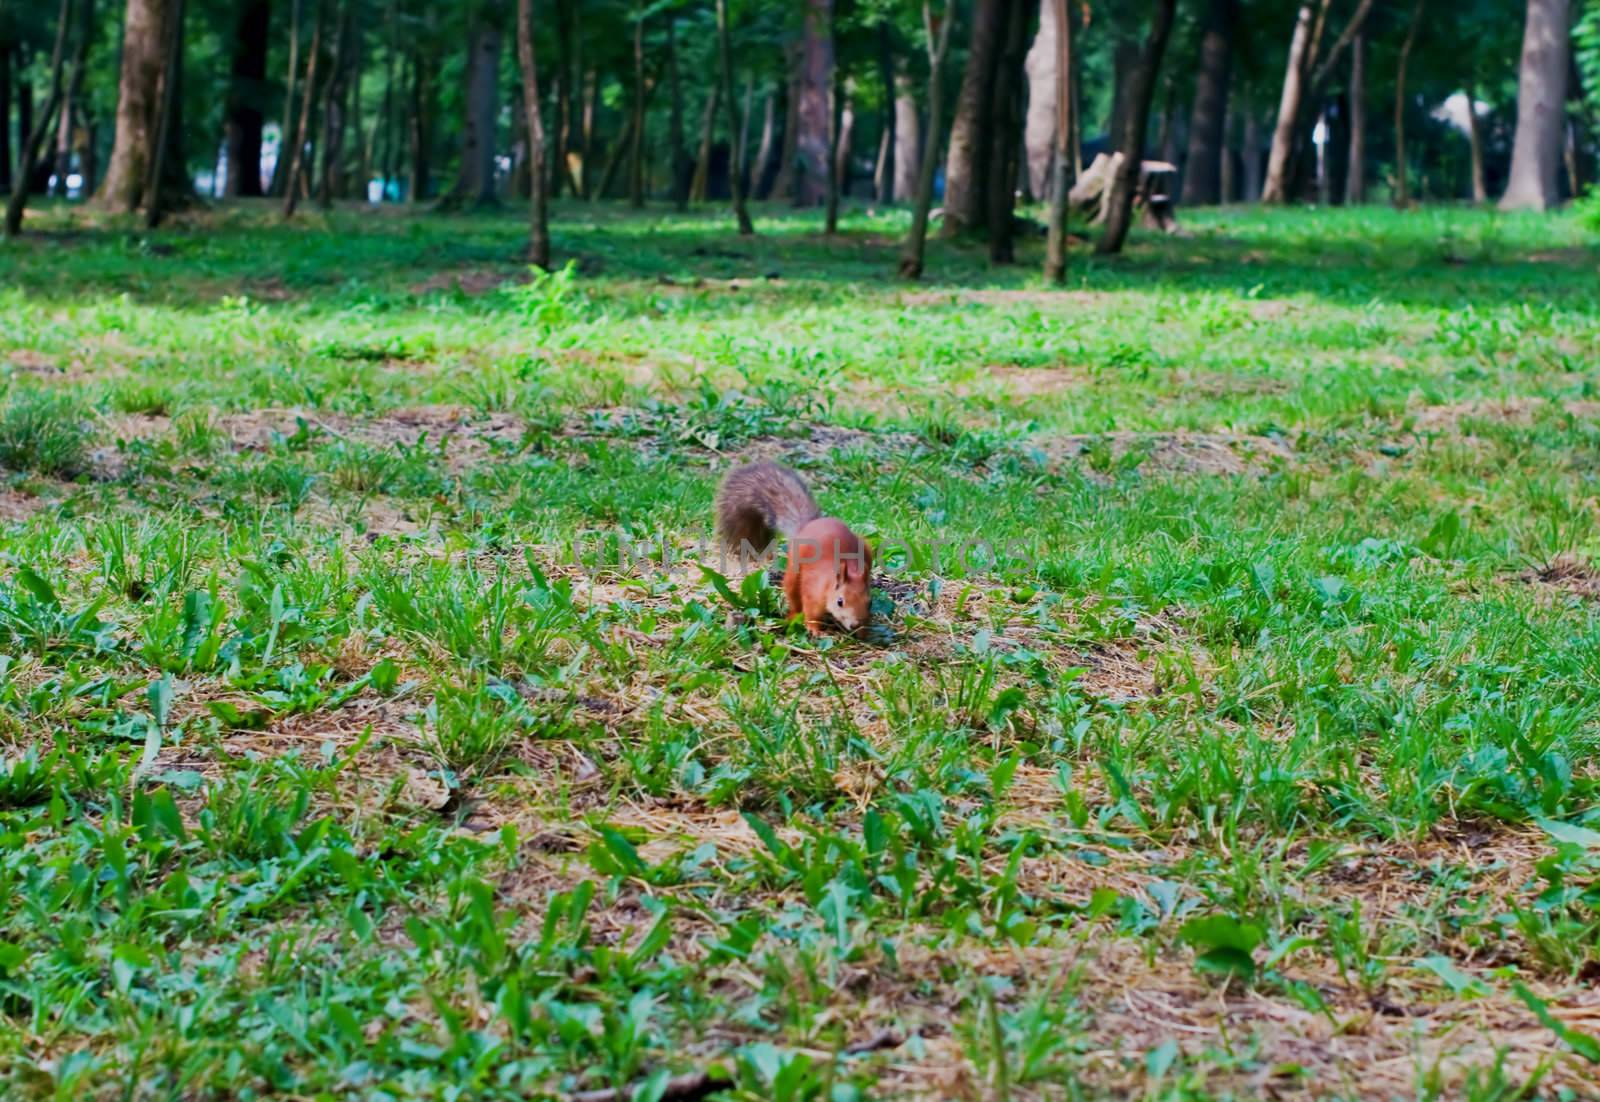 Red squirrel by alena0509